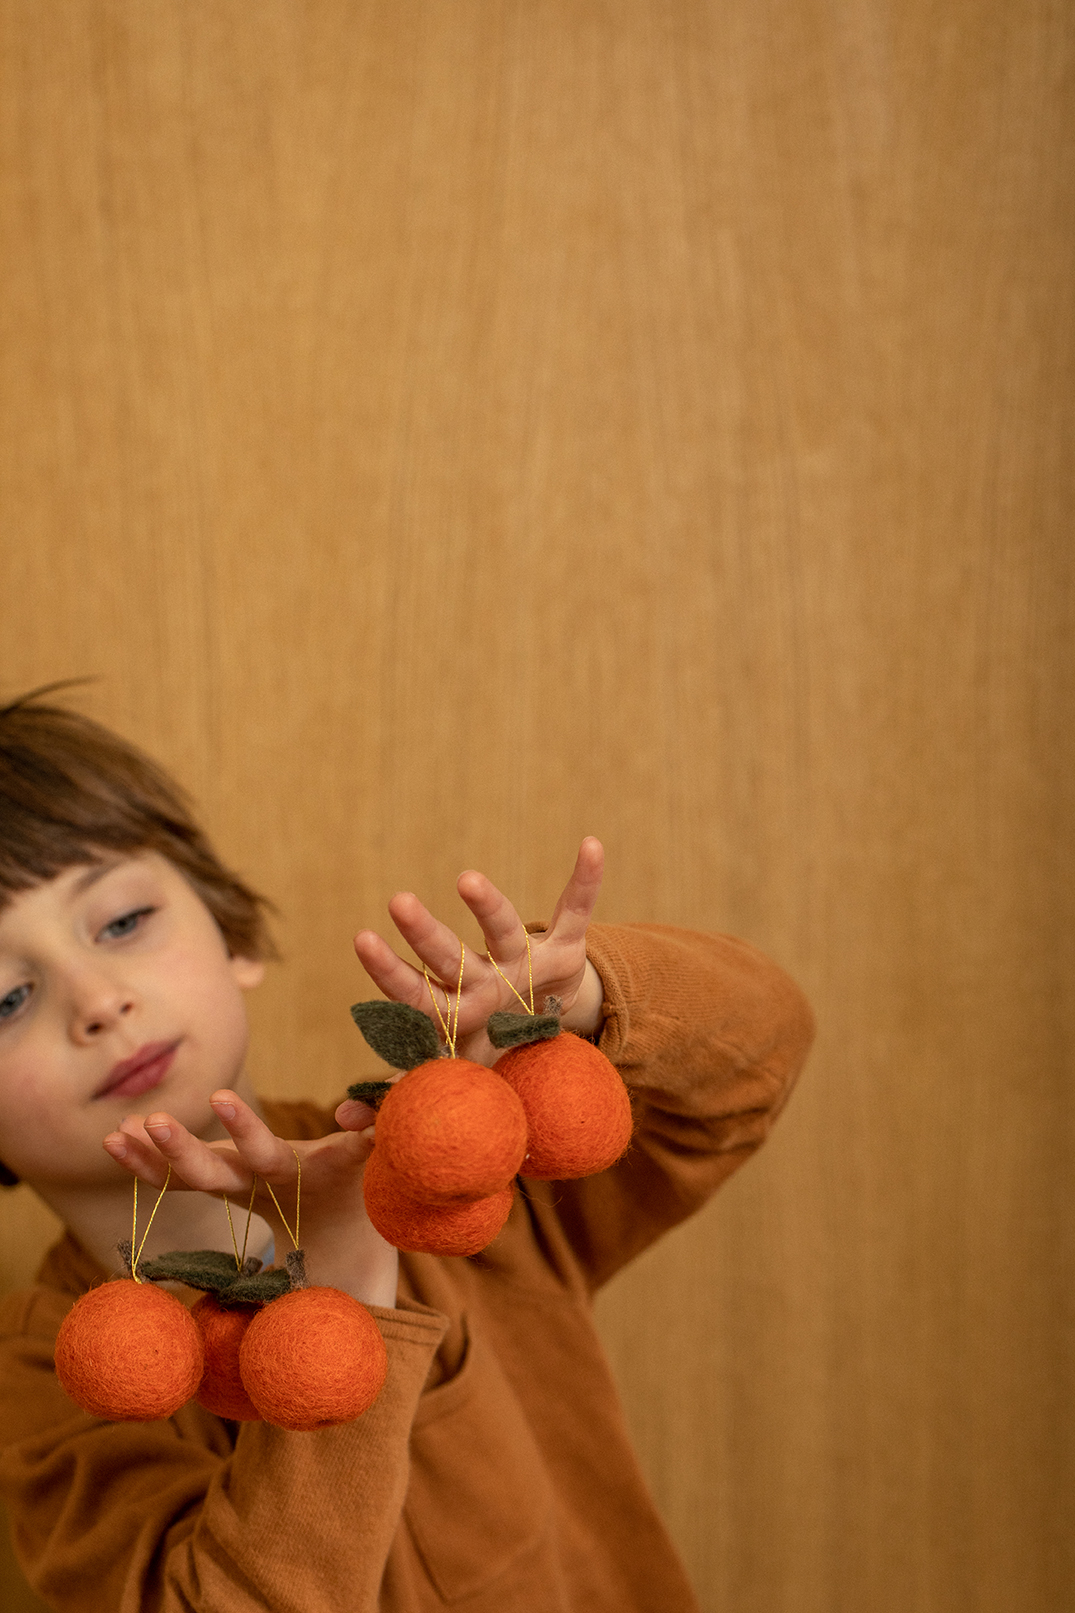 Petit garçon jouant avec des petites décorations clémentines pour le sapin accrochées à ses doigts